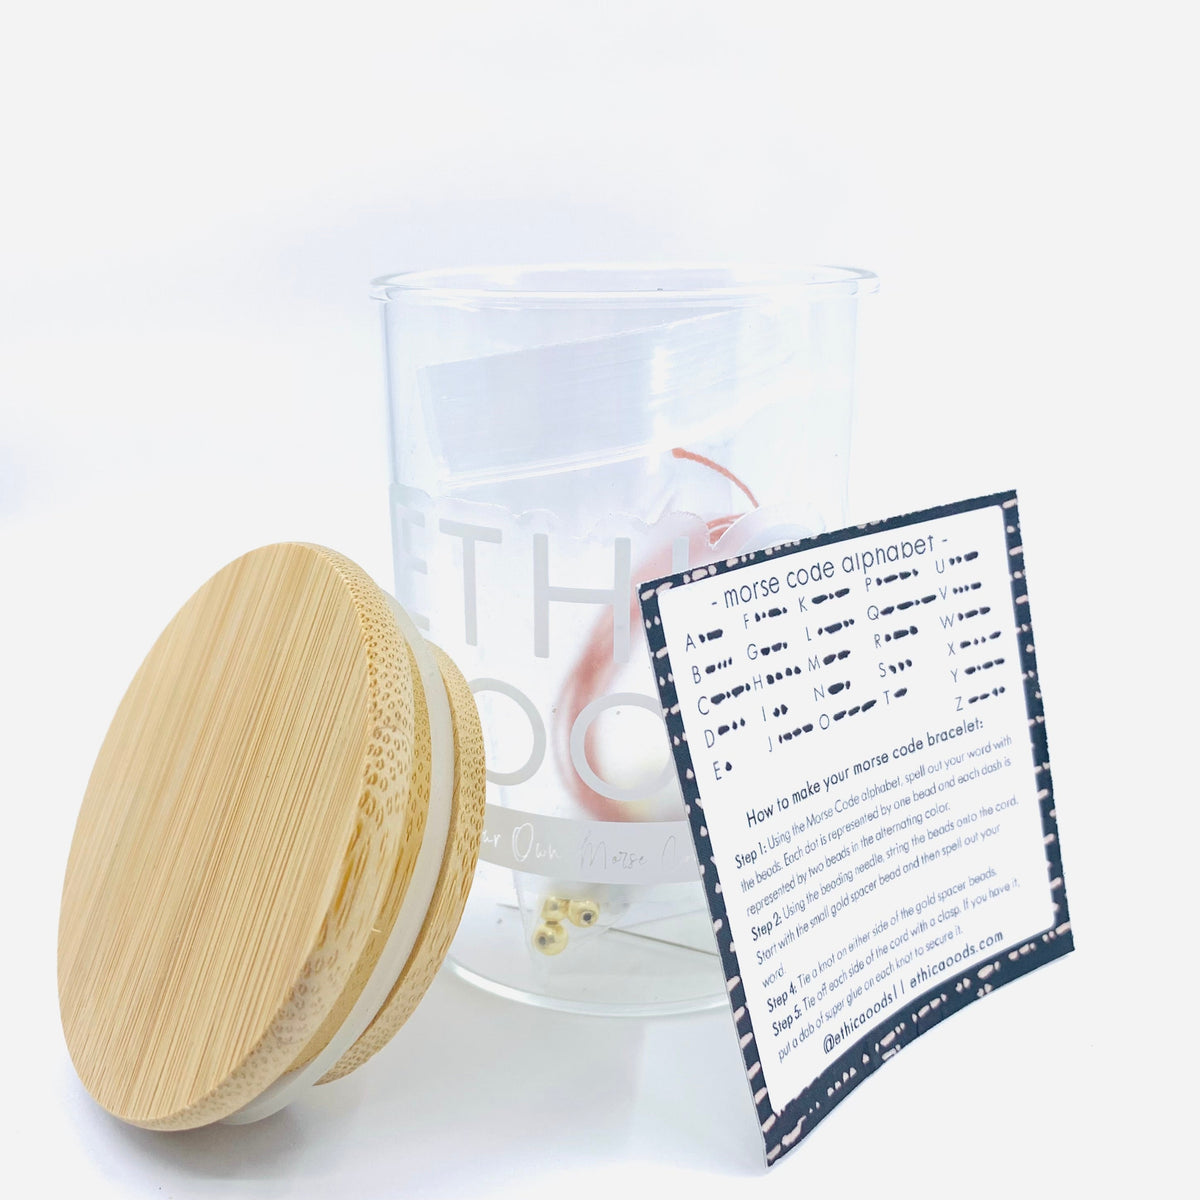 Create Your Own Morse Code Bracelet Kit Ethic Goods 